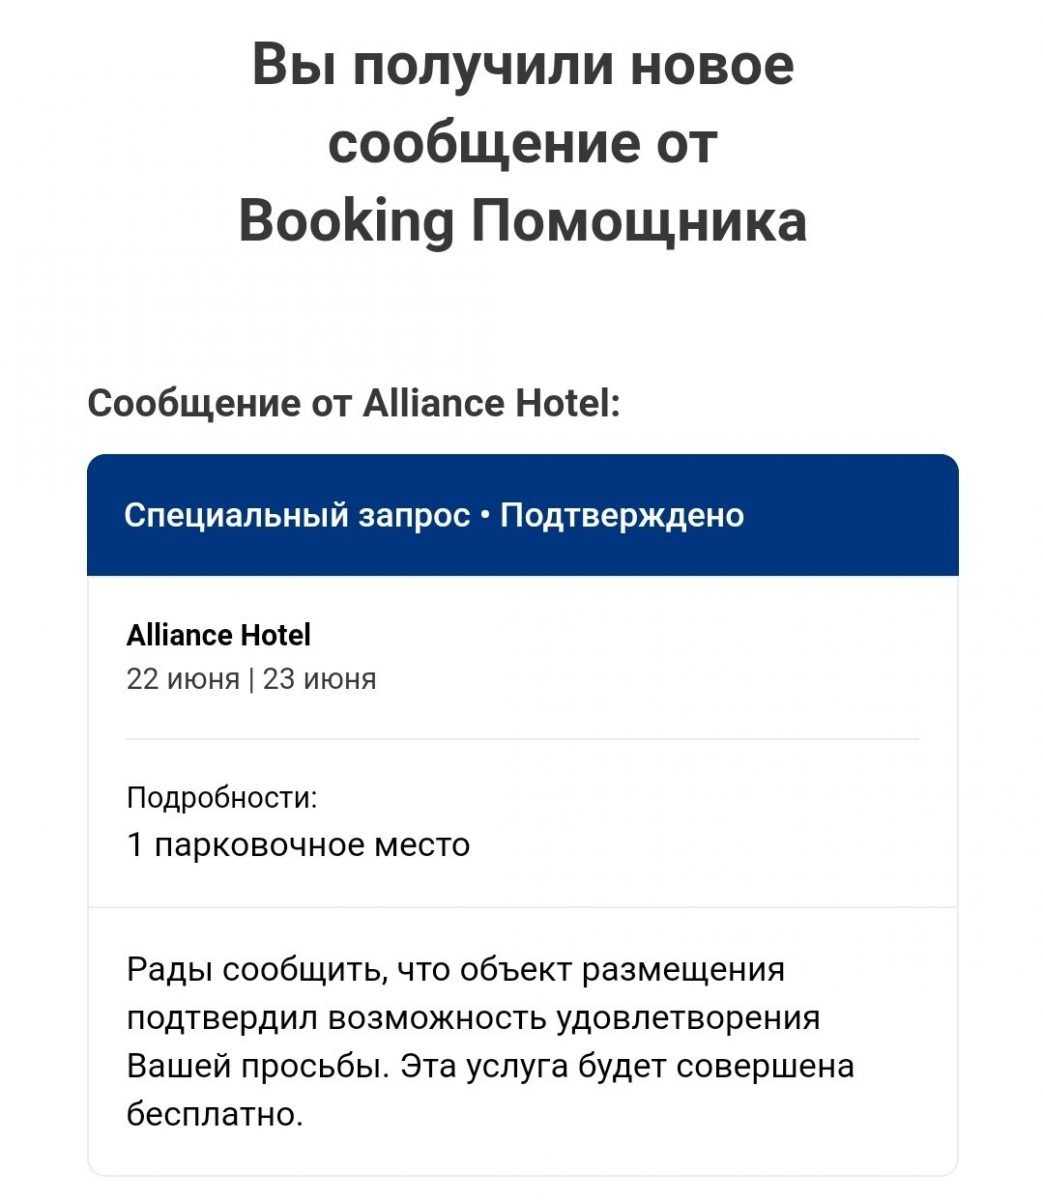 Подтверждение от отеля Alliance в Пловдиве о резервации парковочного места для нас